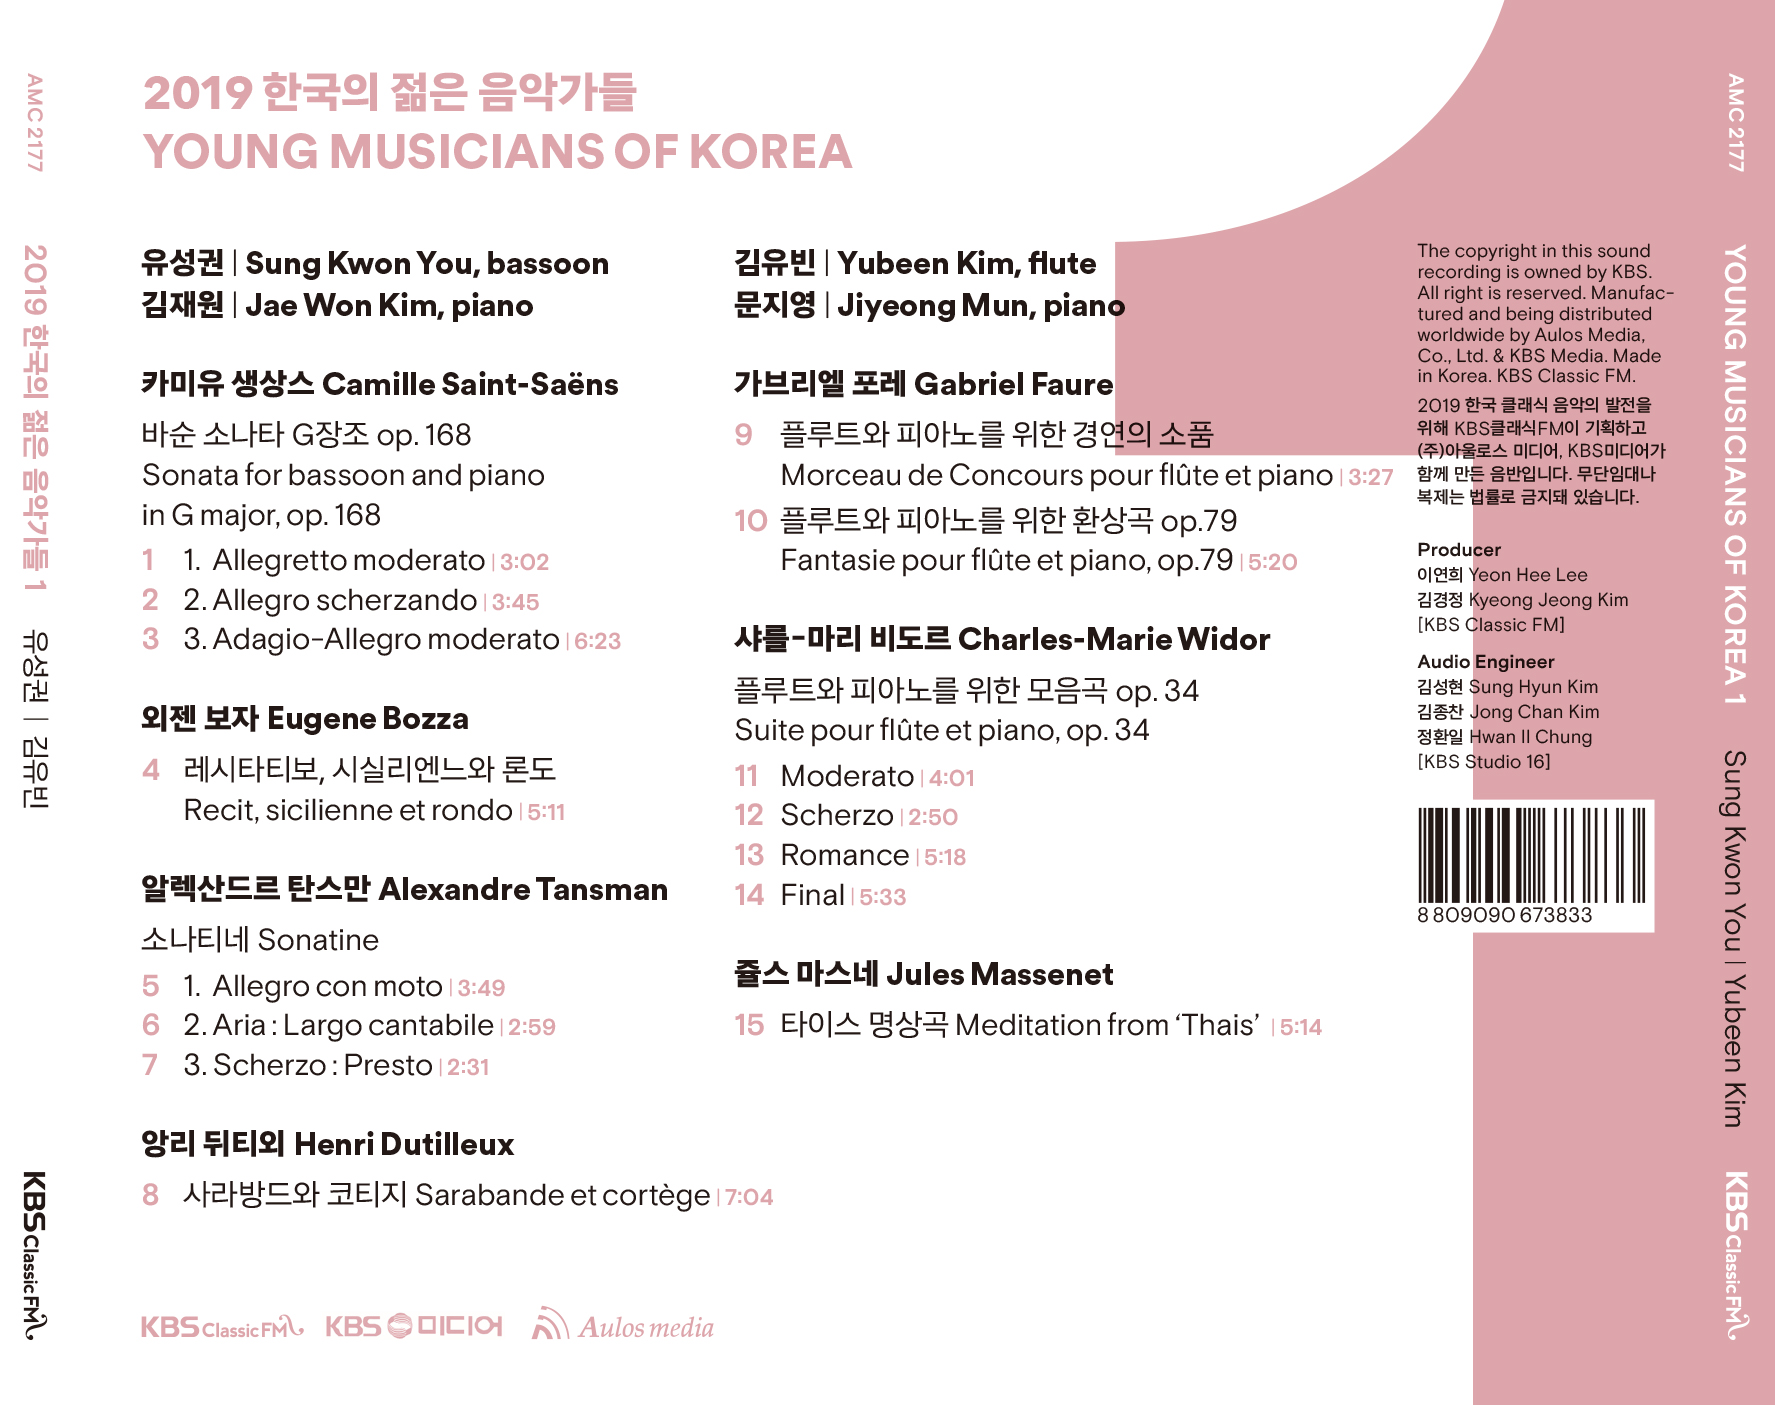 2019 한국의 젊은 음악가들 1집 - 유성권 / 김유빈  